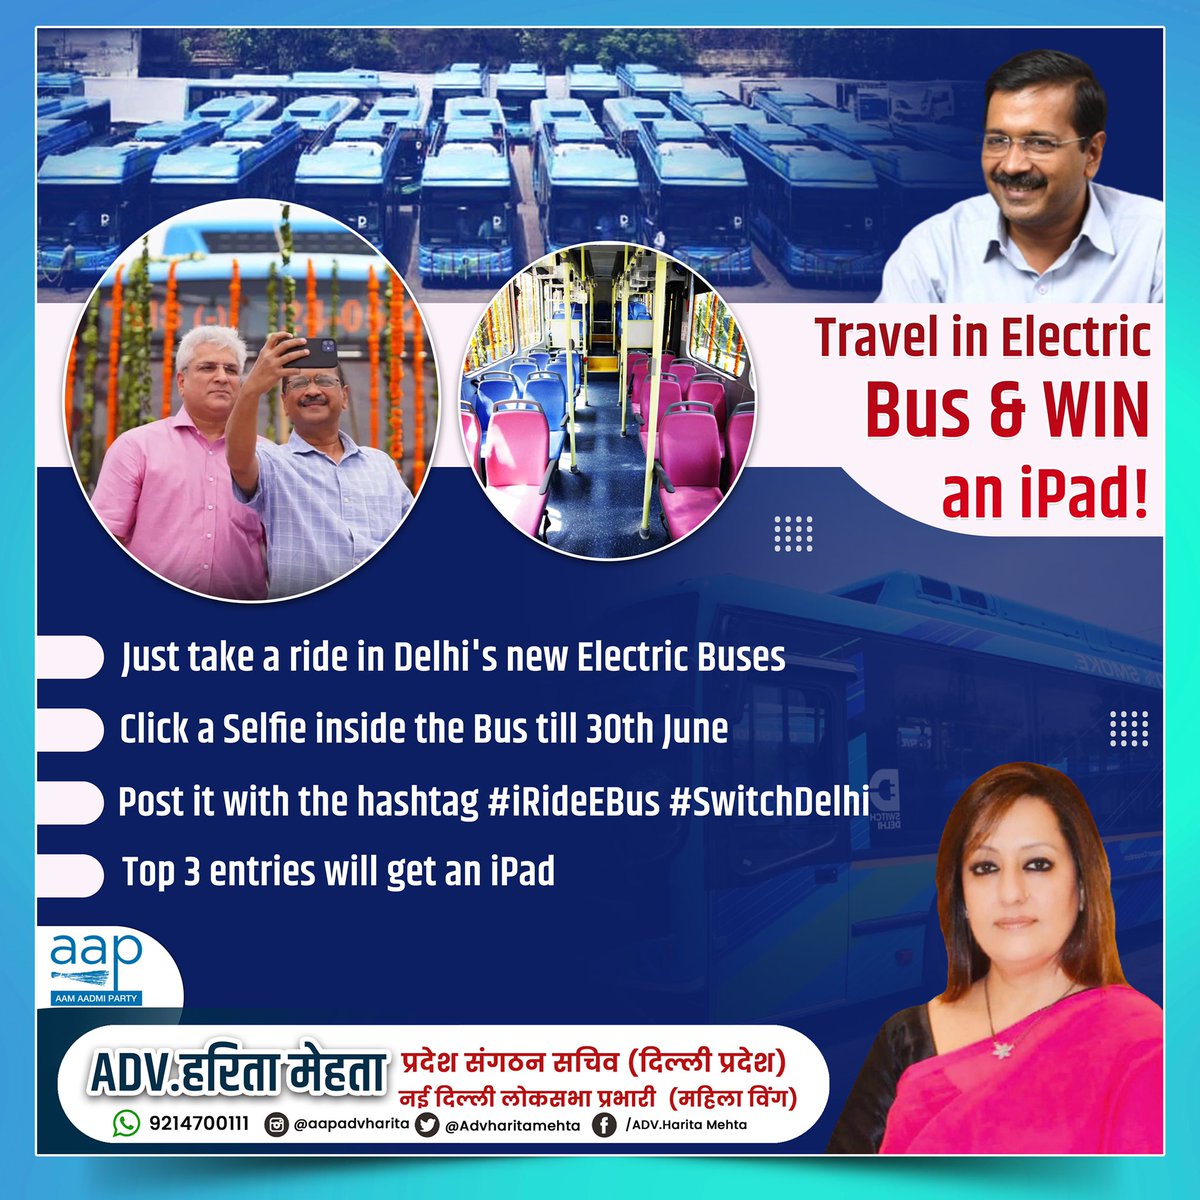 दिल्ली सरकार ने आज राजधानी में 150 नई इलेक्ट्रिक बसों की शुरुआत की। नई बसों में यात्रा करें और आईपैड जीतने का मौका पाएं।

#DelhiGovt #Delhi #E_Bus #EV #NewBuses #Delhigram #Transport #kejariwalgovernment #Kejriwalmodel #advharitamehta #हरितामेहता